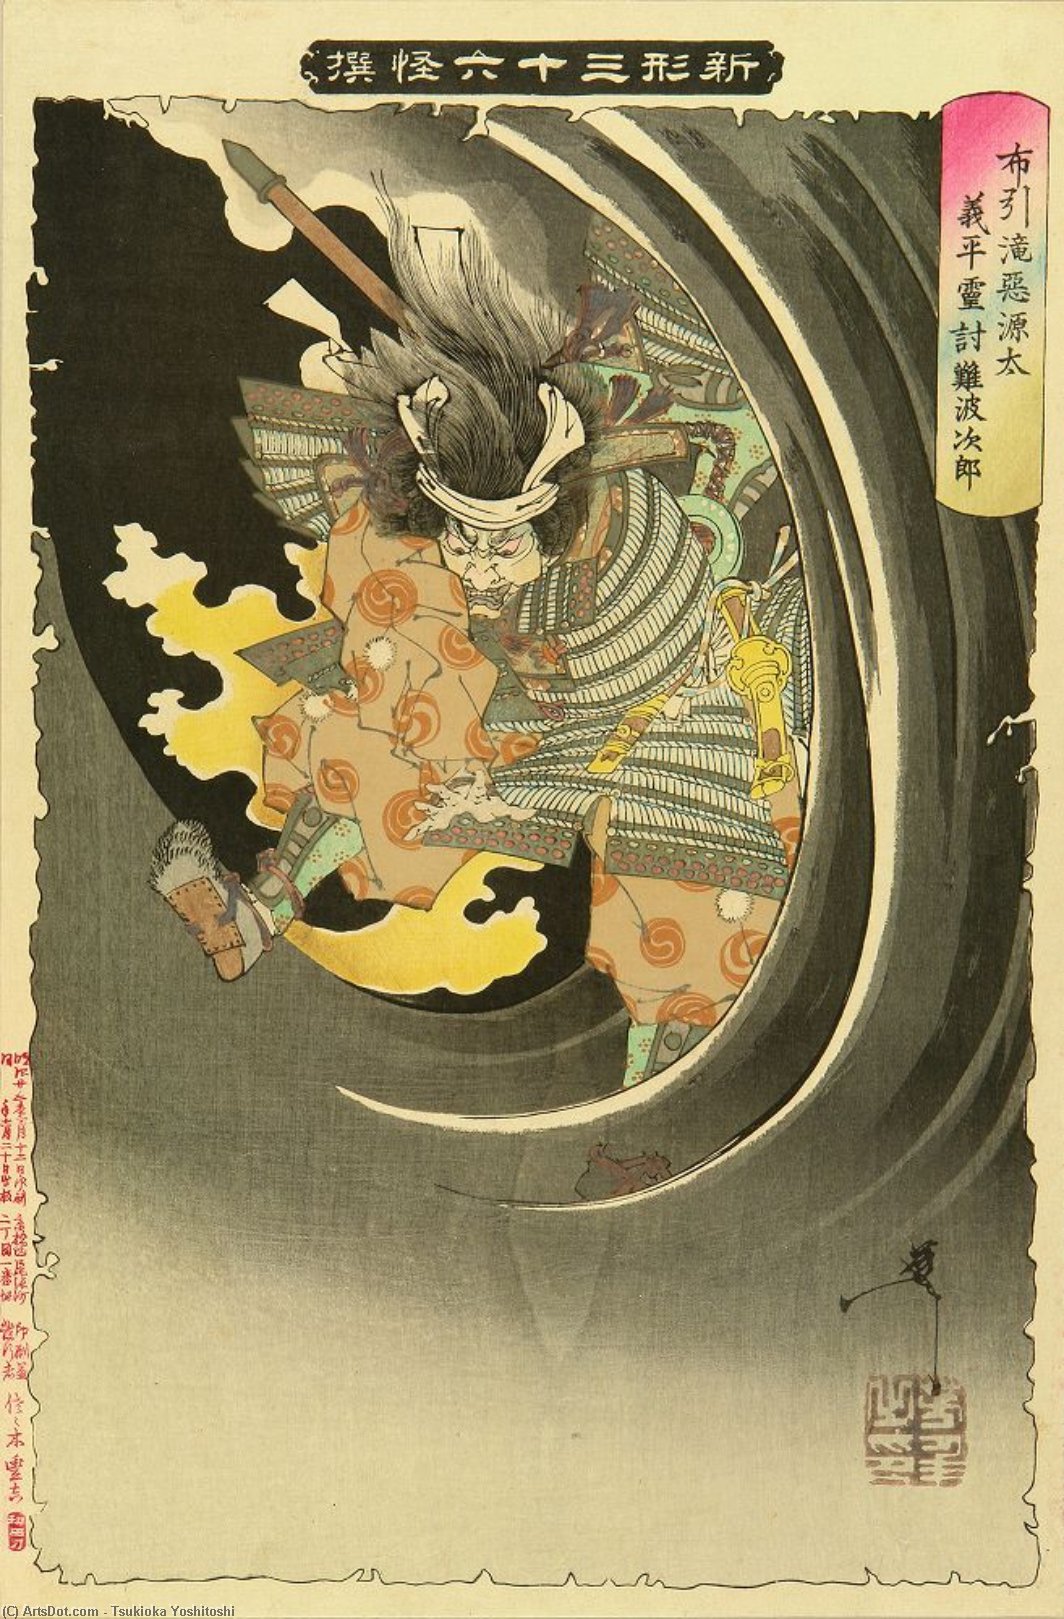 WikiOO.org - Encyclopedia of Fine Arts - Maleri, Artwork Tsukioka Yoshitoshi - The Ghost Of Wicked Genta Yoshihira Attacking Mamba Jiro